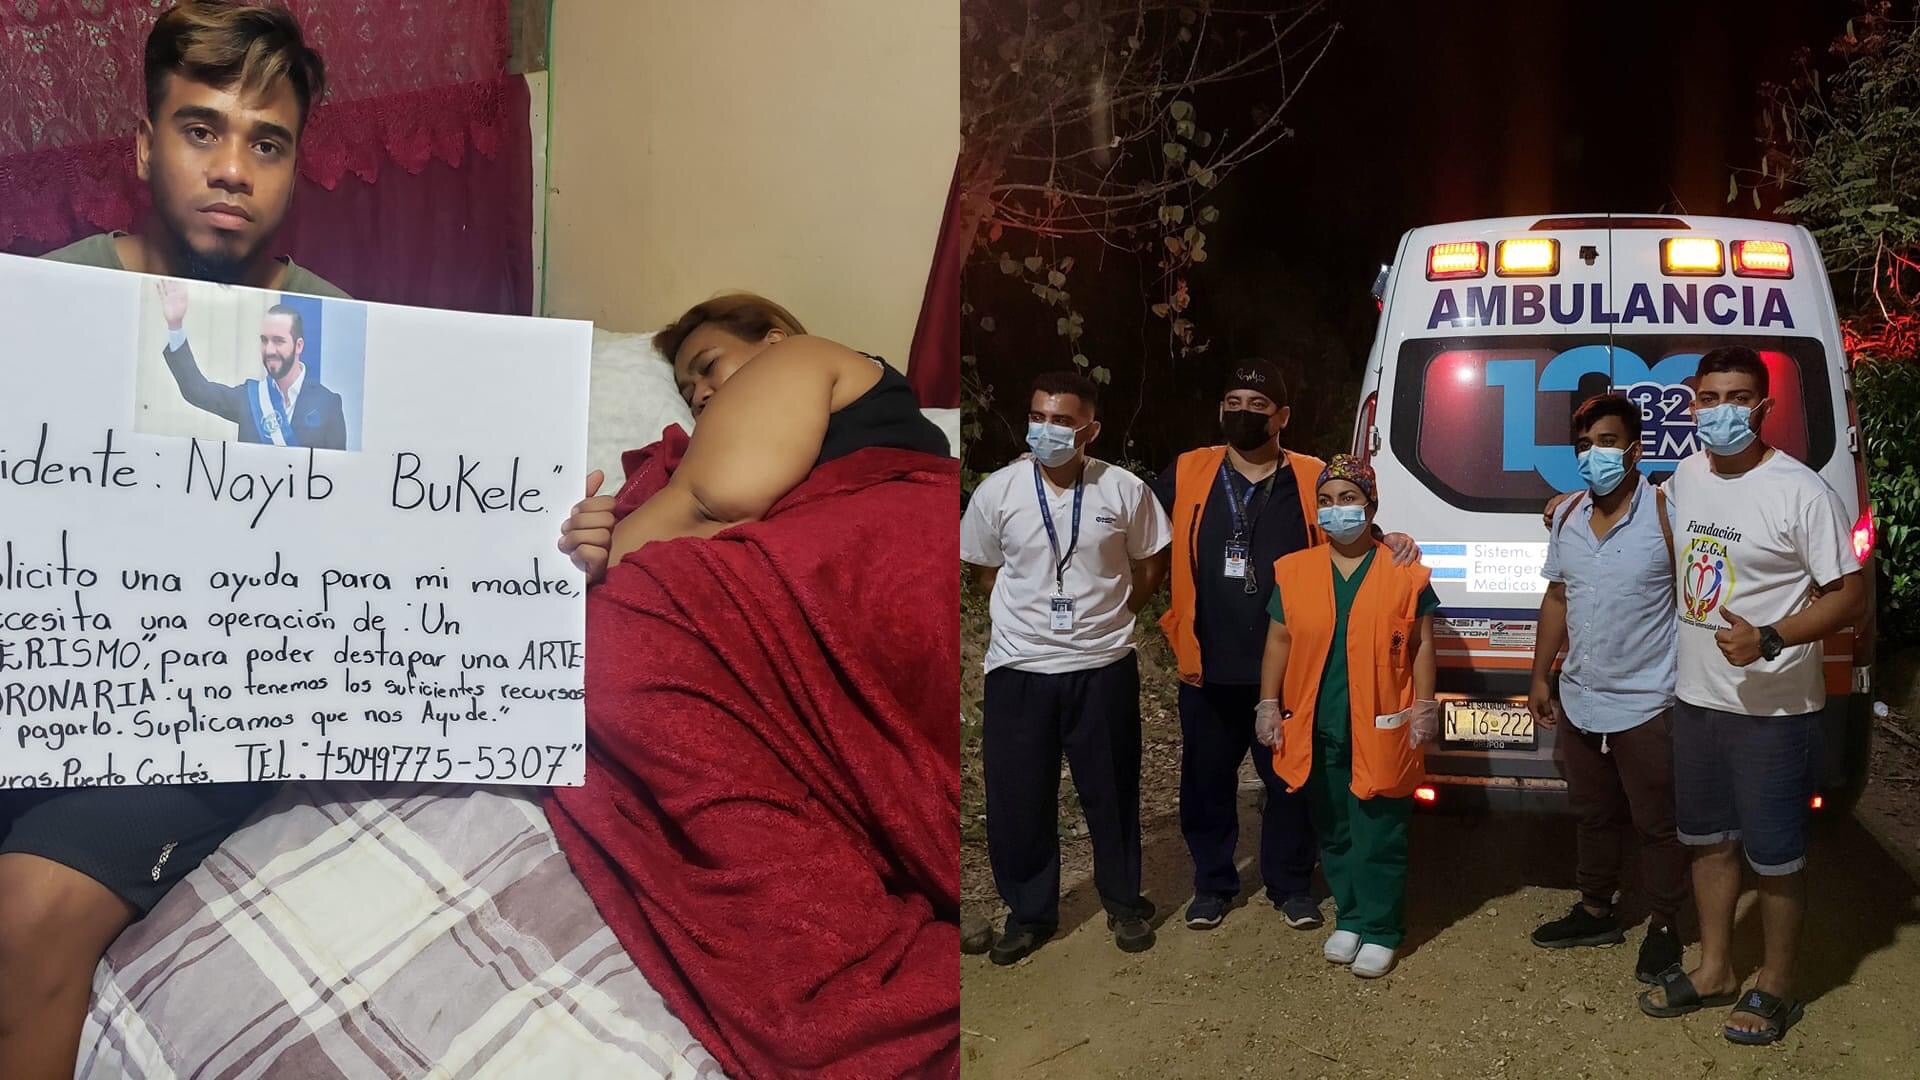 Nayib Bukele envió ambulancia a hondureño que le clamó ayuda para su madre